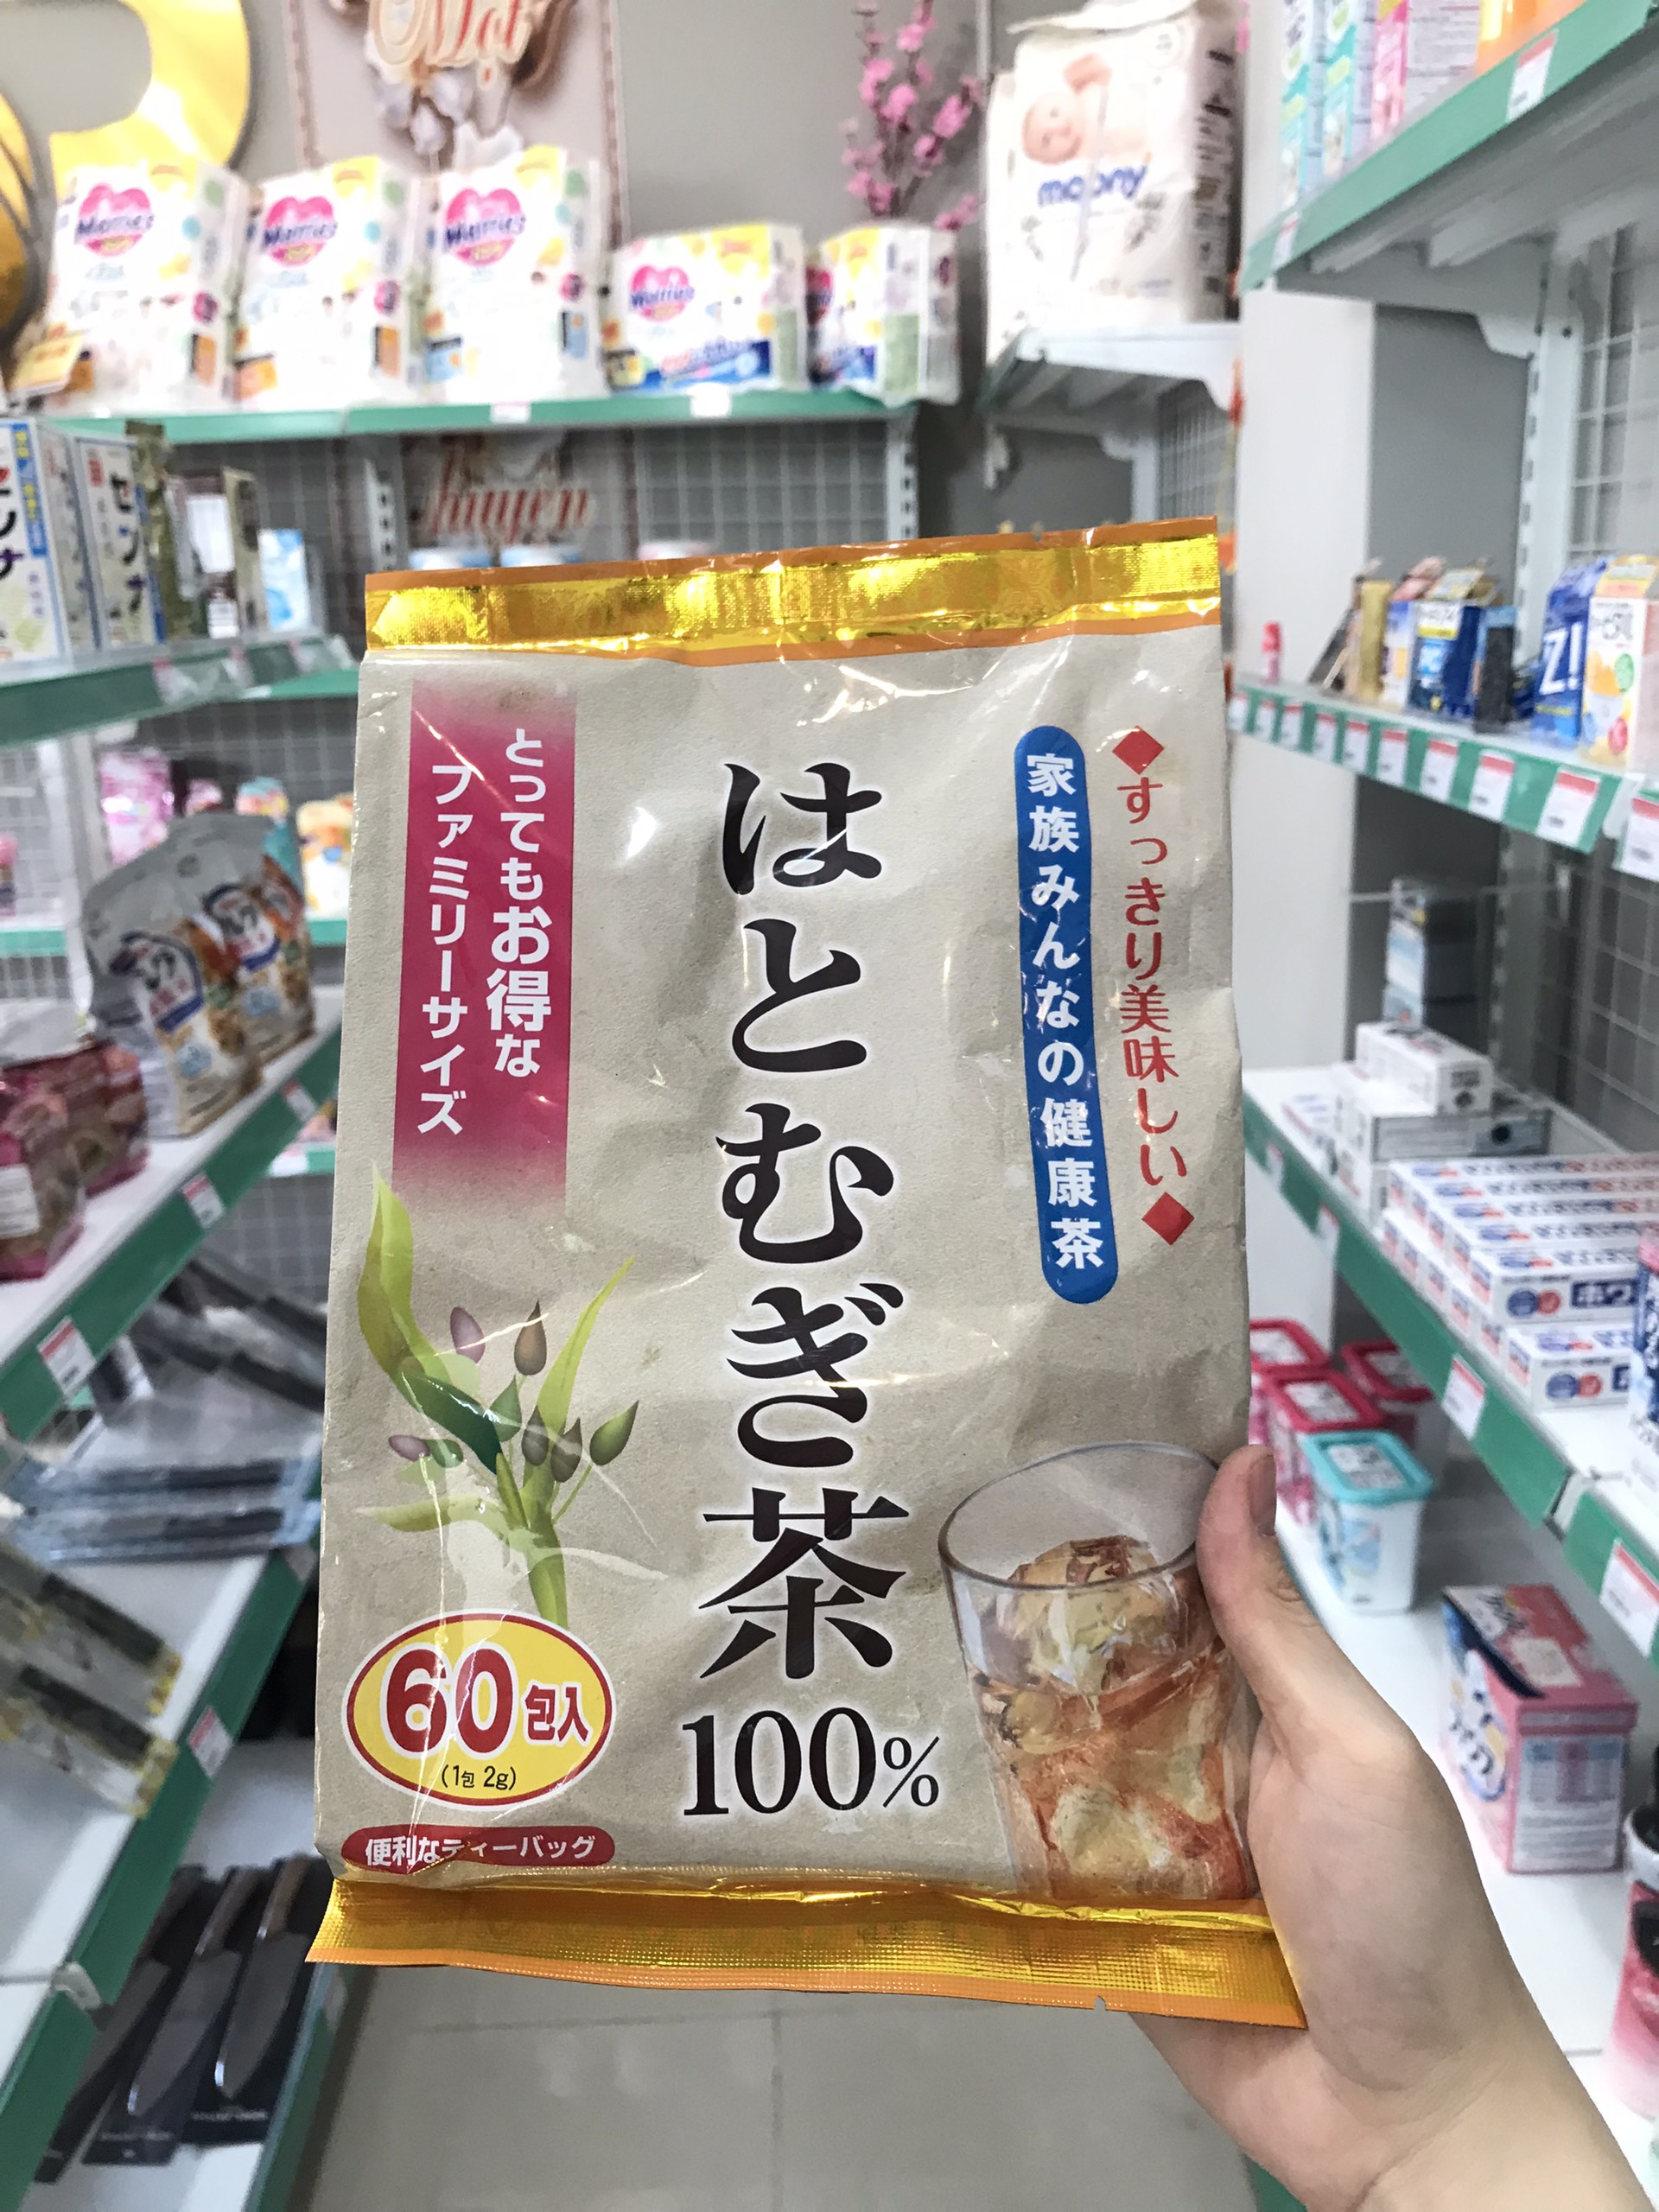 Trà hạt ý dĩ Yuwa không chứa caffeine, giúp thanh nhiệt cơ thể gói 60 túi lọc